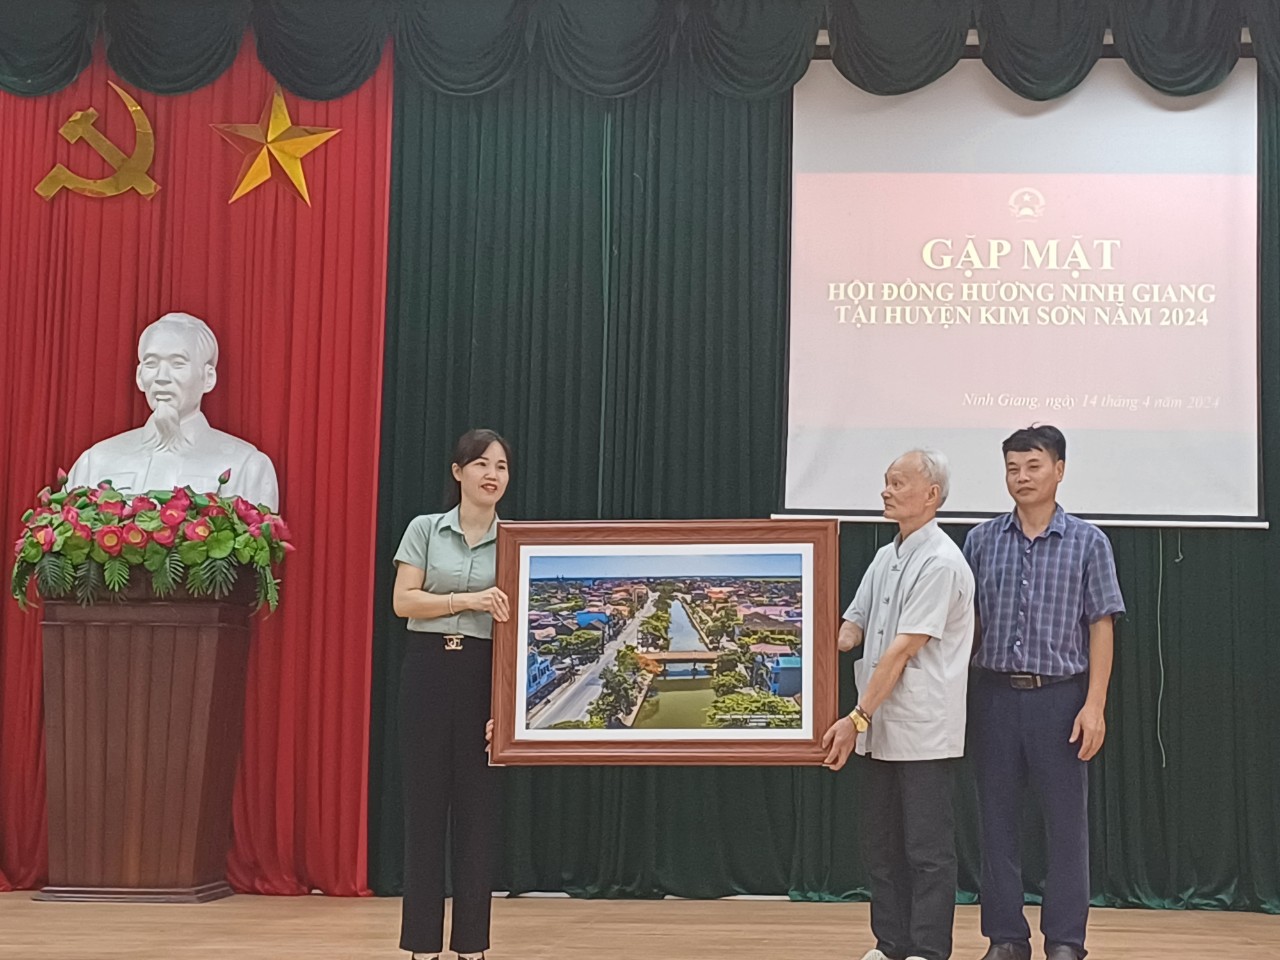 Gặp mặt Hội đồng hương xã Ninh Giang tại Kim Sơn